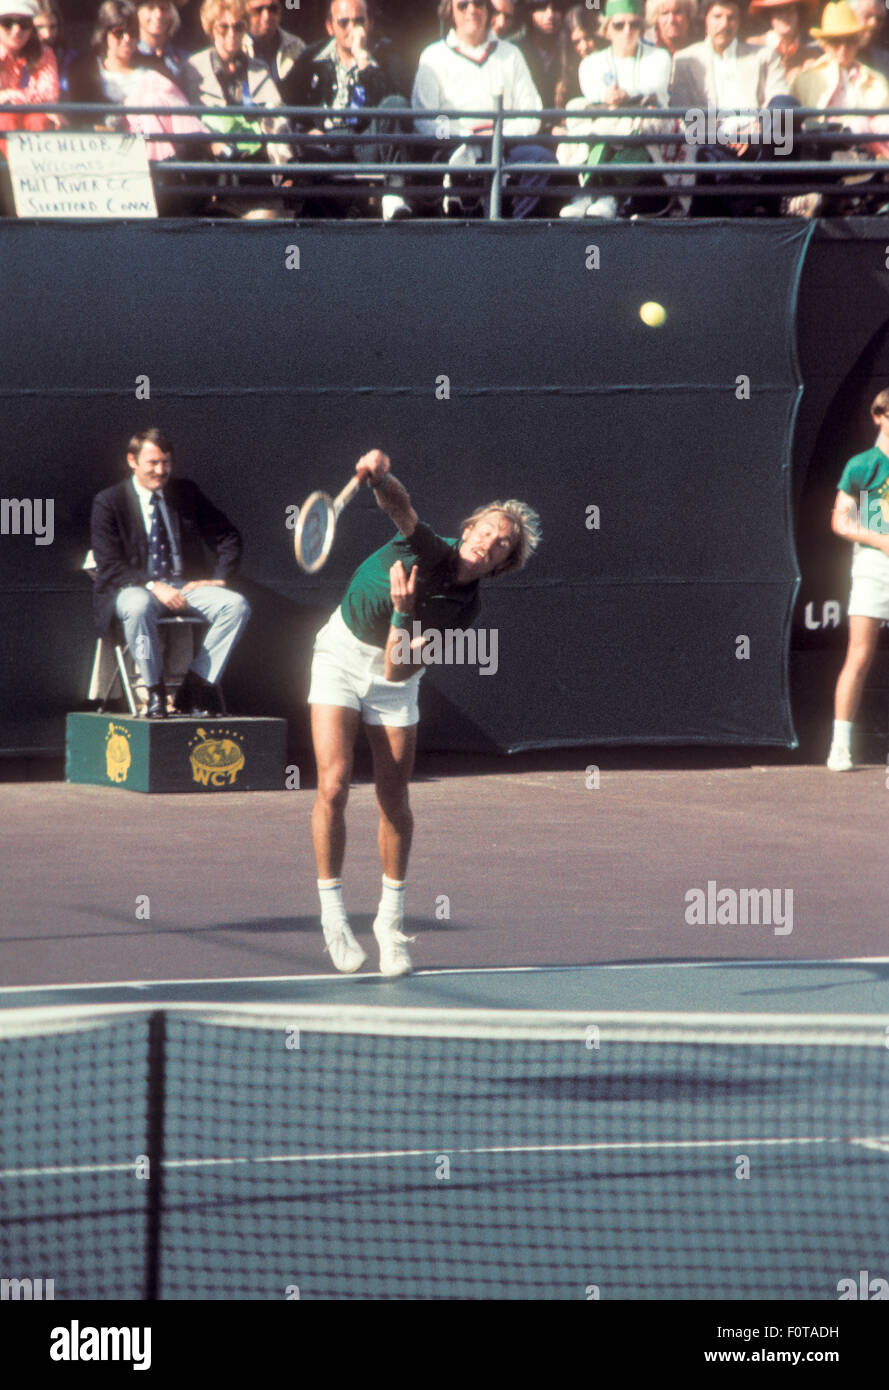 Stan Smith en acción en el torneo de tenis en Carlsbad, California en Marzo de 1974. Foto de stock